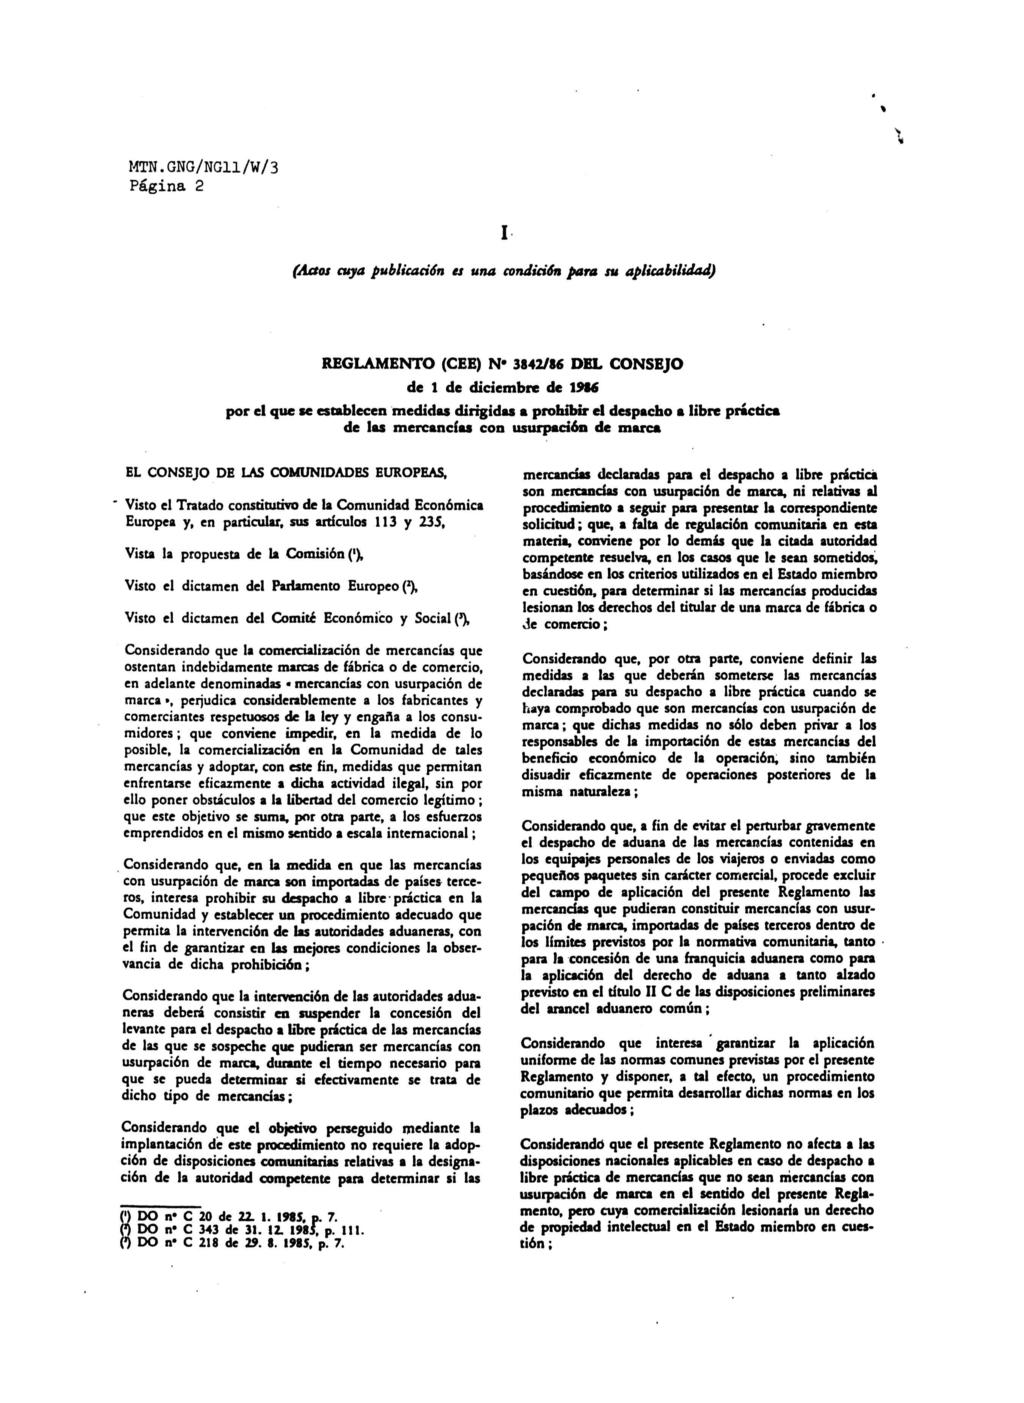 MTN.GNG/NG11/W/3 Página 2 I (Actos cuya publicación a una condición para su aplicabilidad) REGLAMENTO (CEE) N* 3842/86 DEL CONSEJO de 1 de diciembre de 1986 por el que se establecen medidas dirigidas